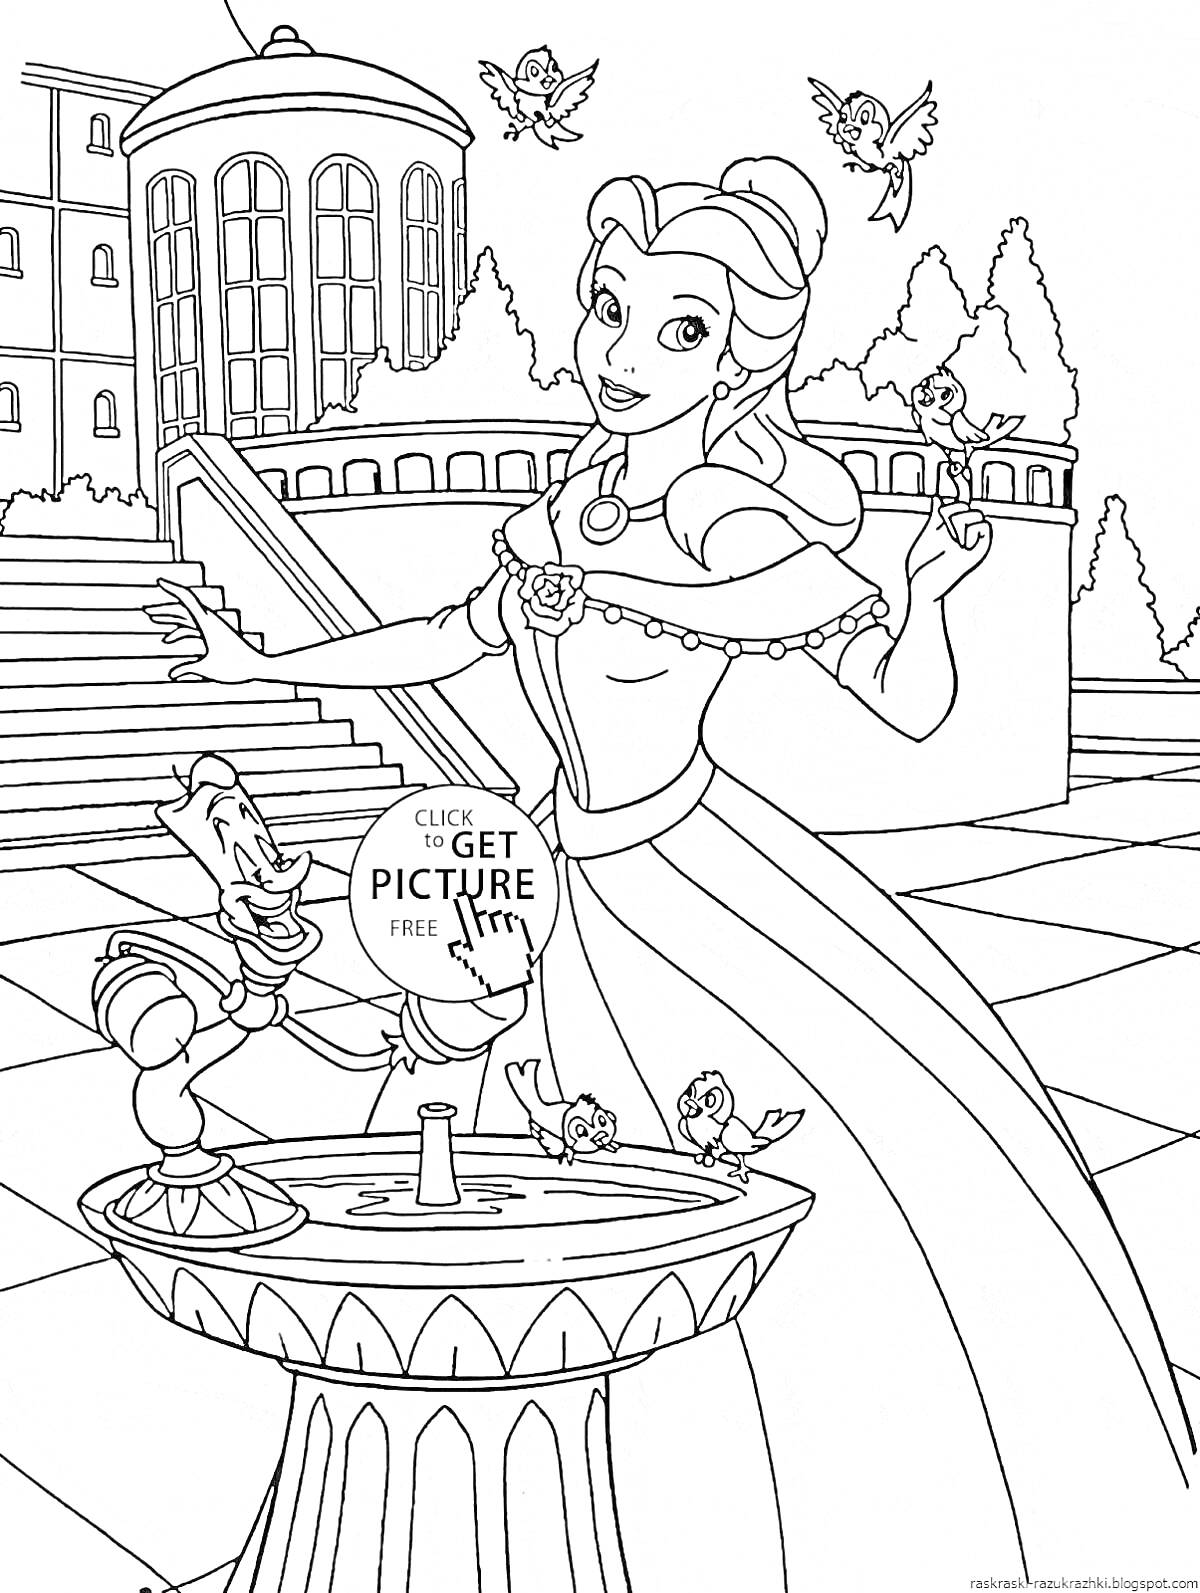 Раскраска Принцесса в платье возле фонтана с птицами и замком на заднем плане